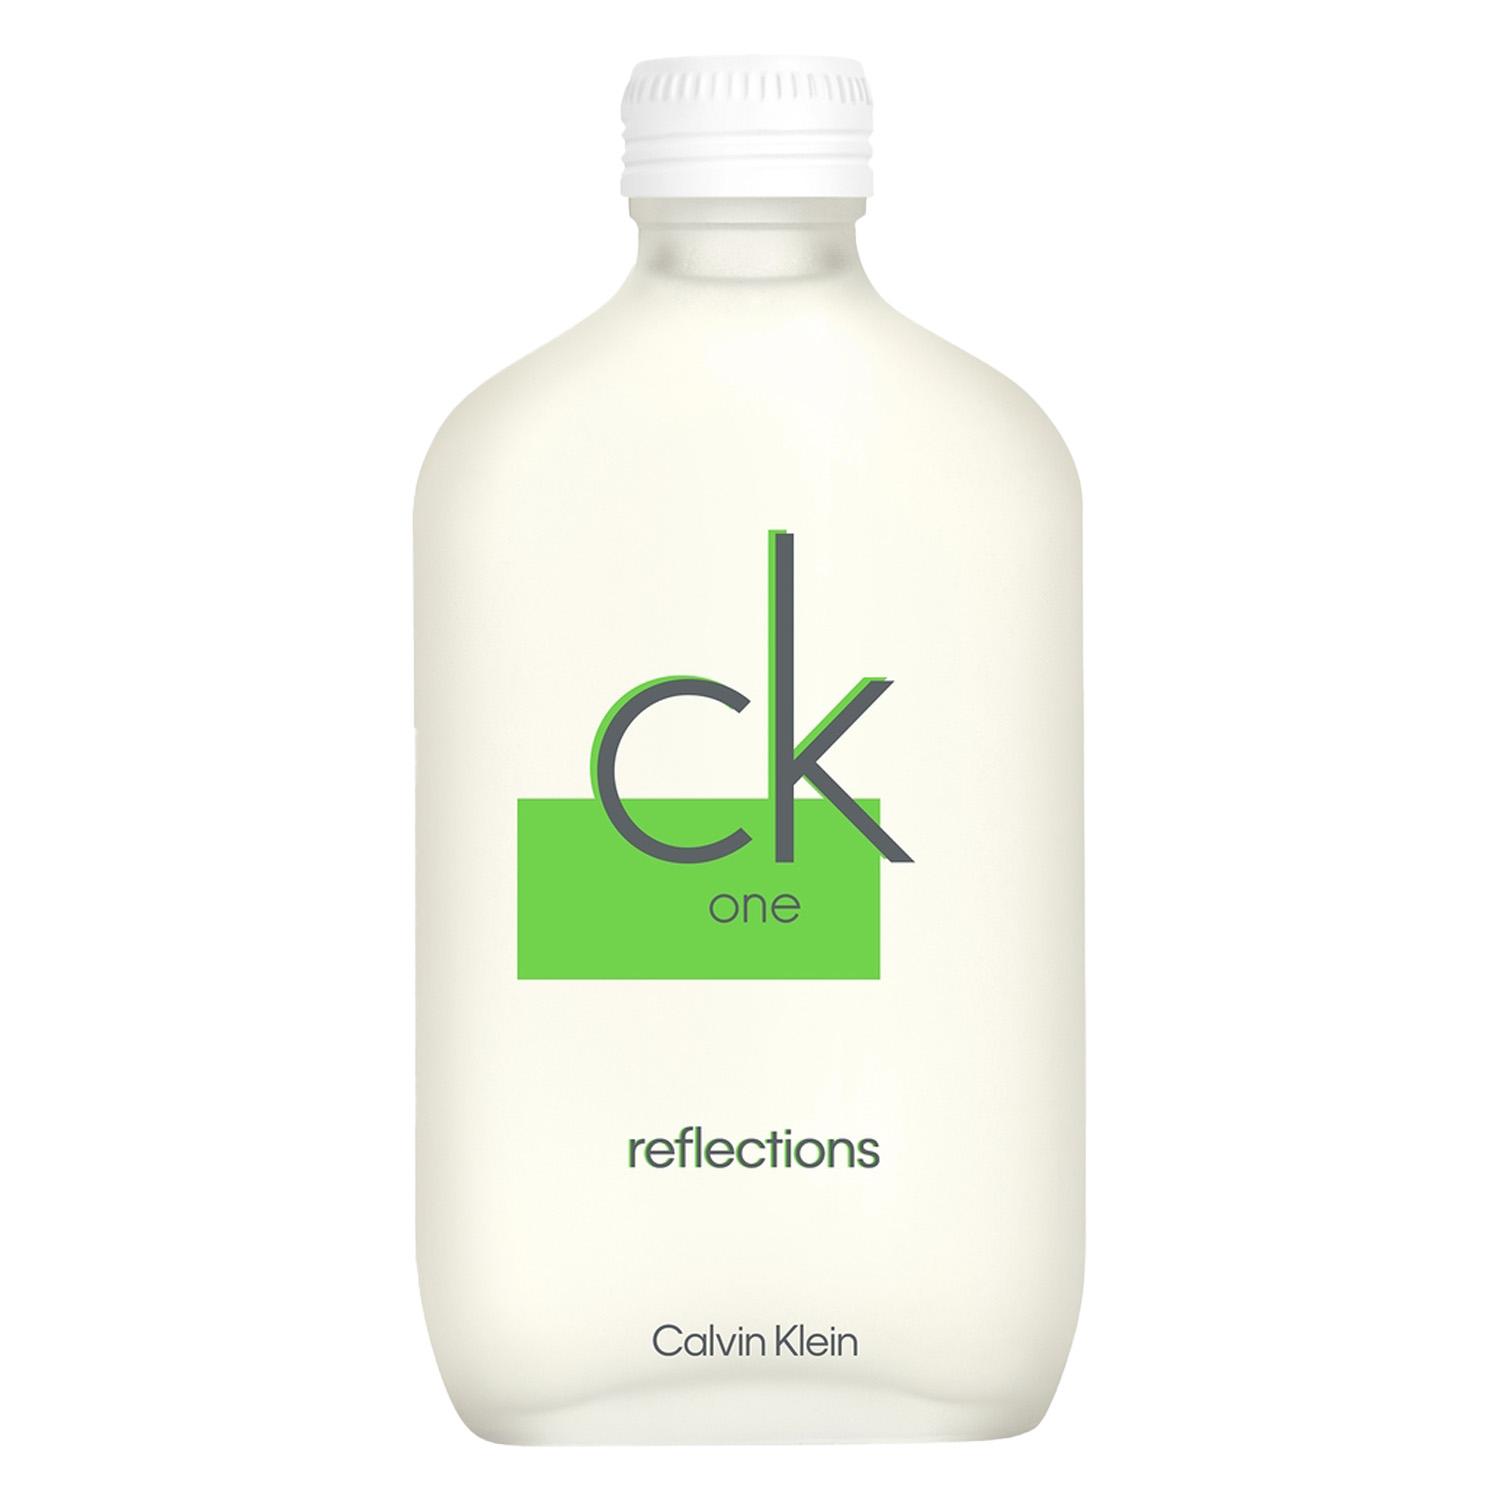 CK One - Reflections Eau de Toilette